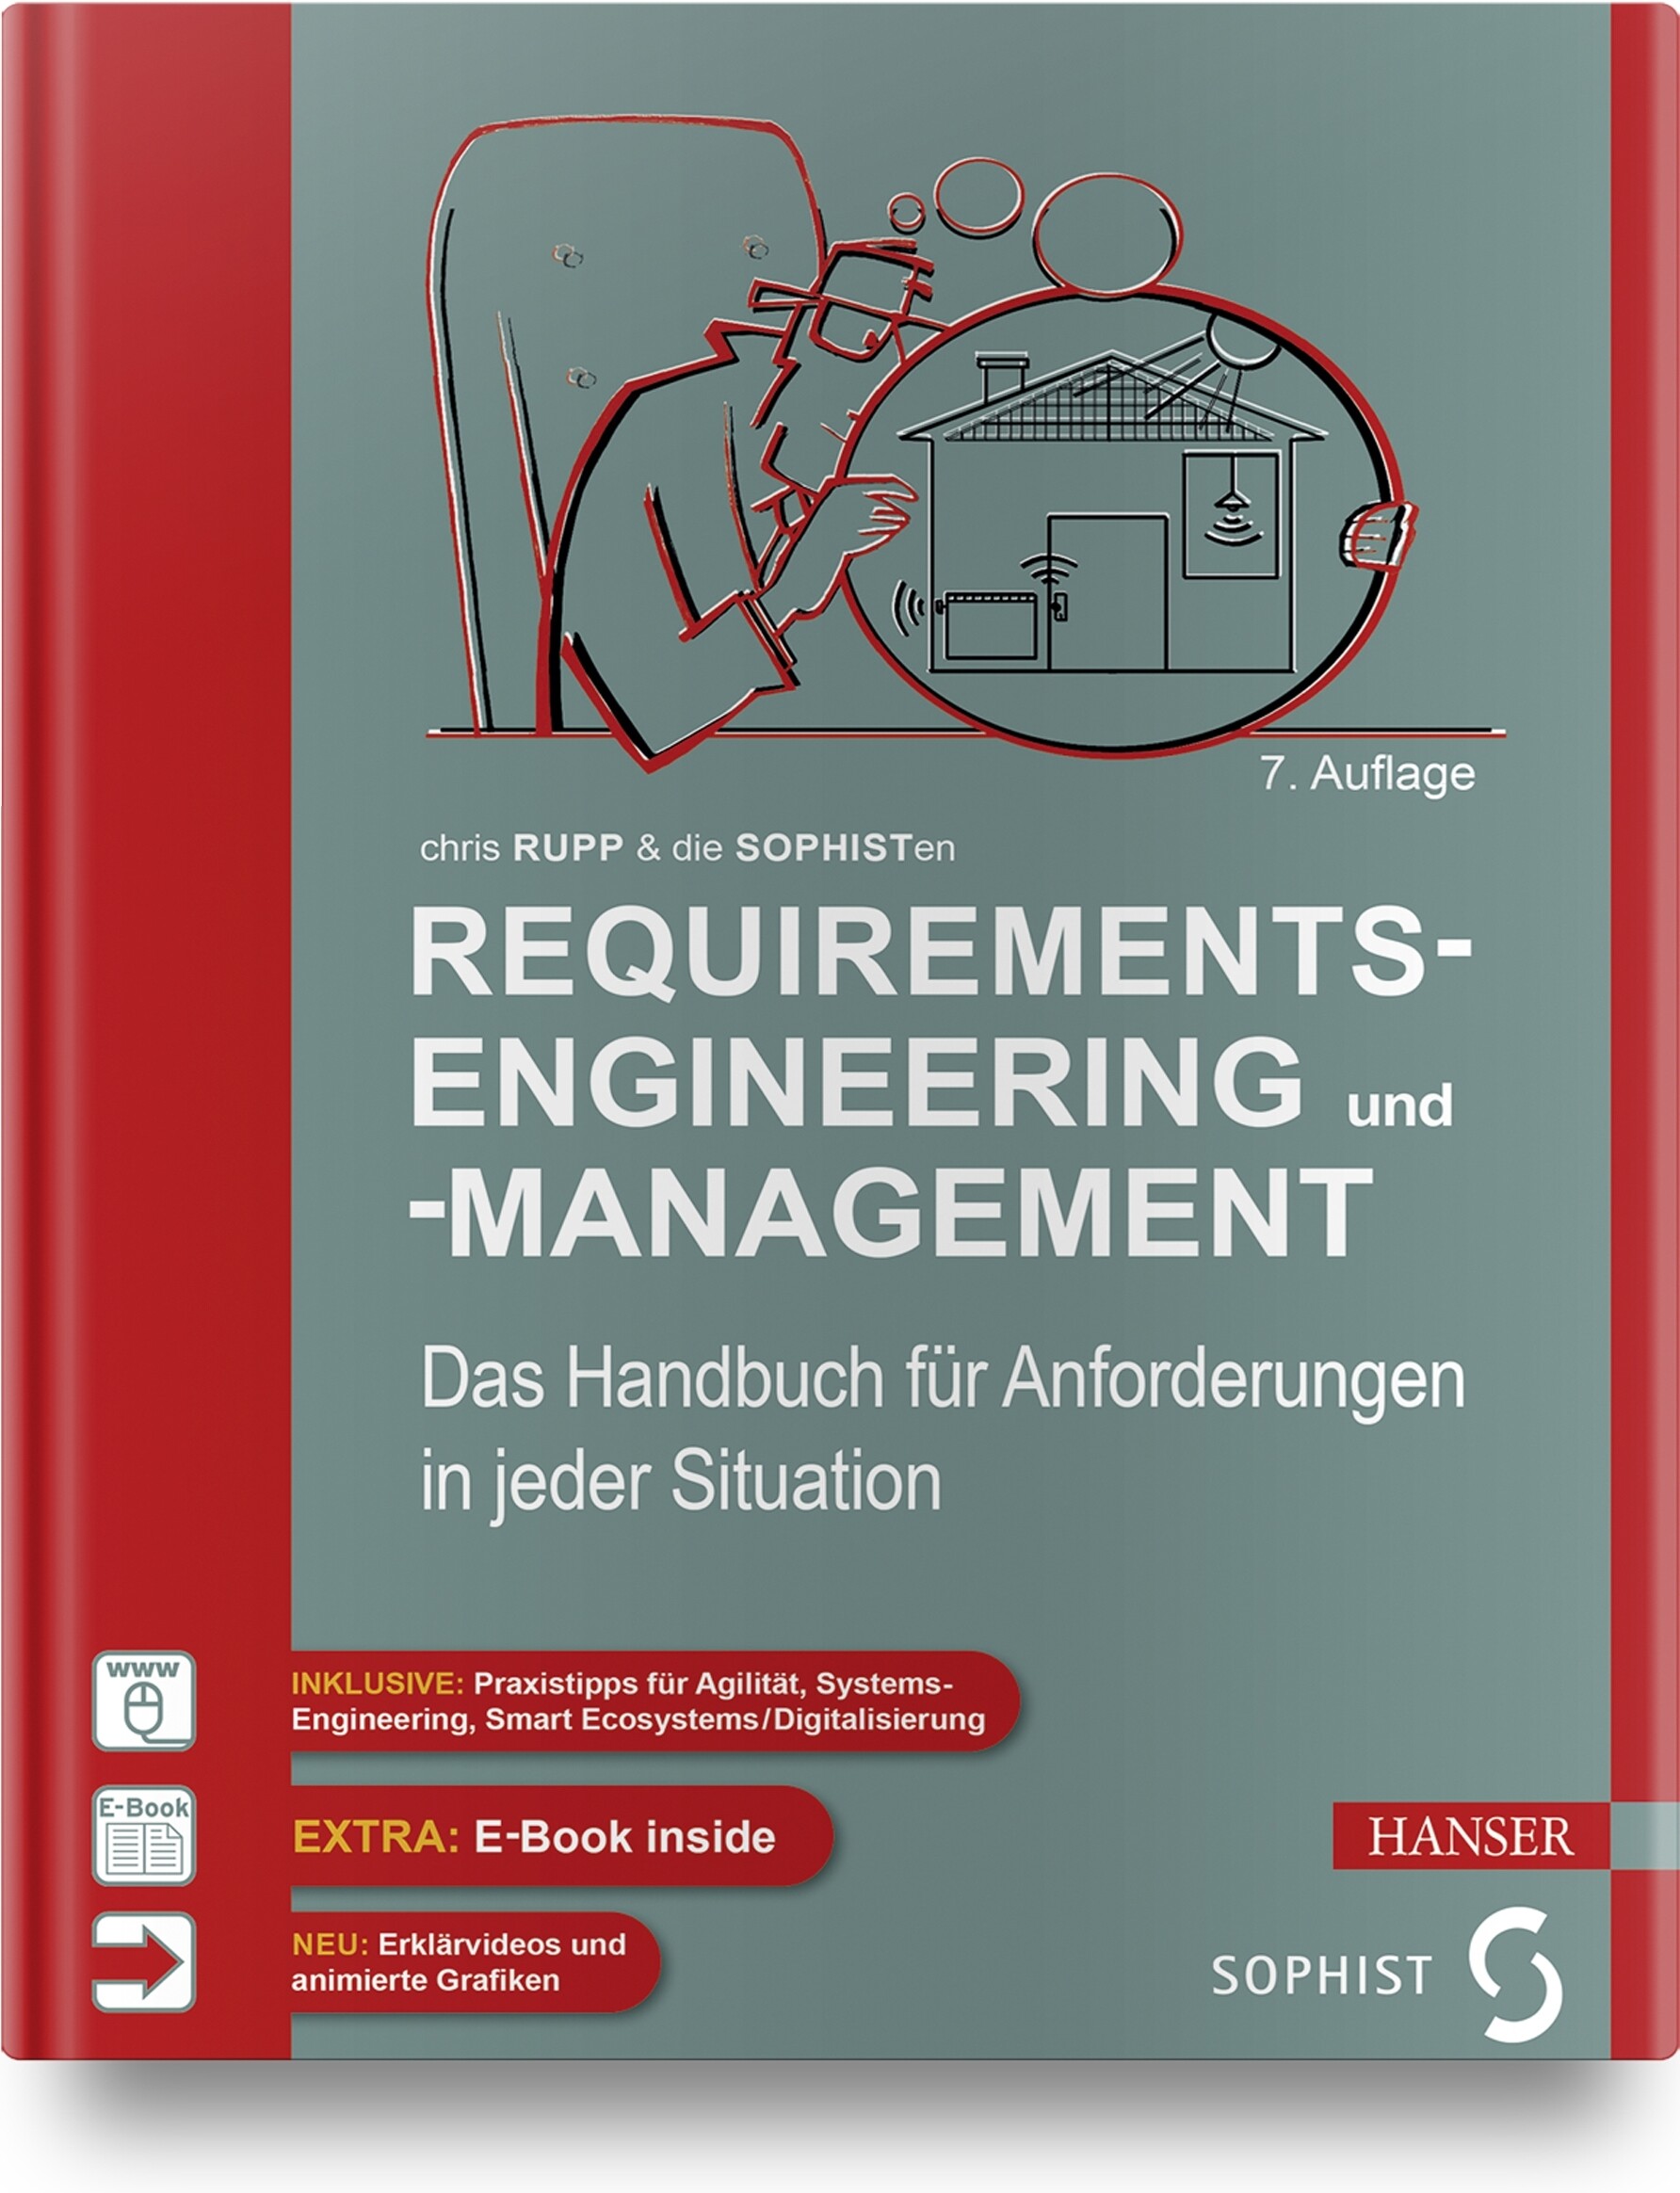 Requirements-Engineering und -Management (7. Auflg.)